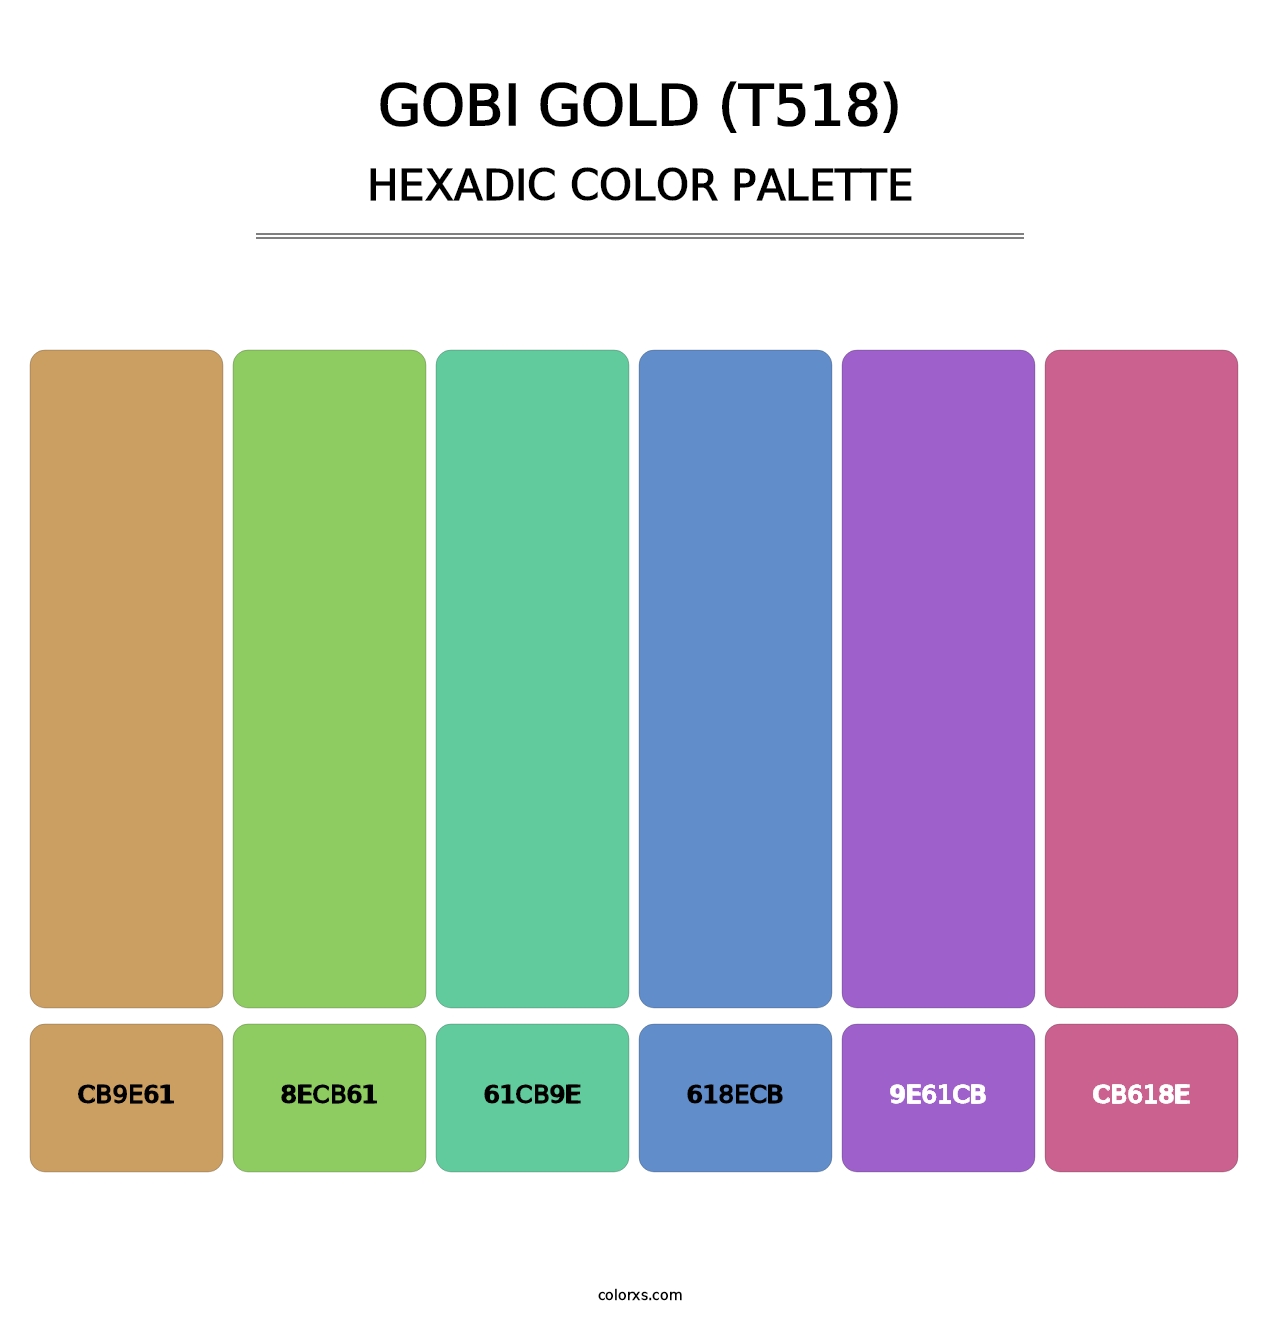 Gobi Gold (T518) - Hexadic Color Palette